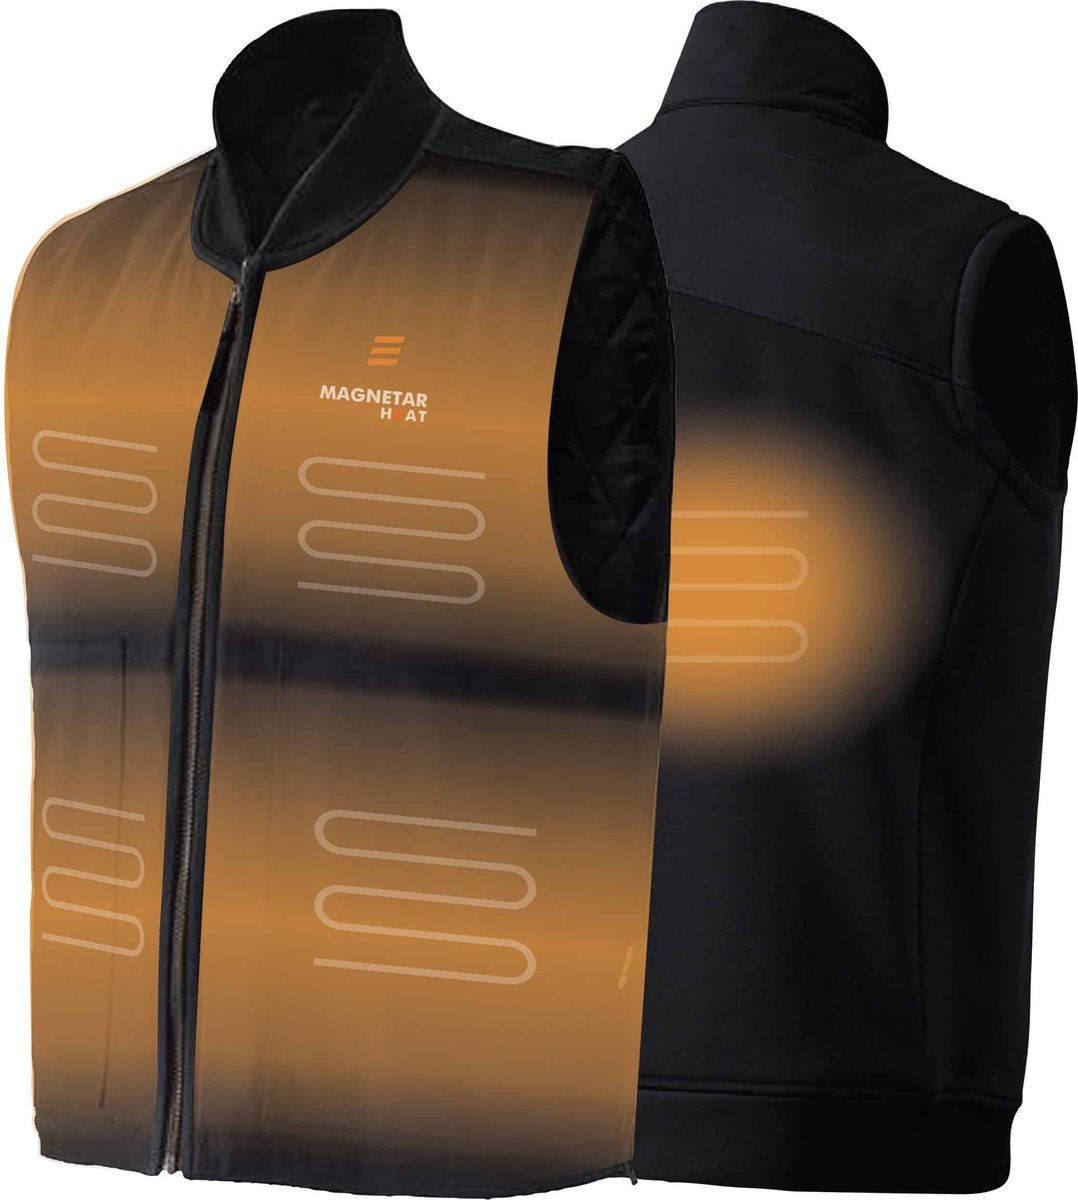 Verwarmde Werk Bodywarmer - Magnetar Heat - Verwarmd Vest - Zwart - Voor Mannen en Vrouwen - Maat M - Incl. Powerbank en oplader kabel - Unisex - Geschikt voor in de Werkplaats